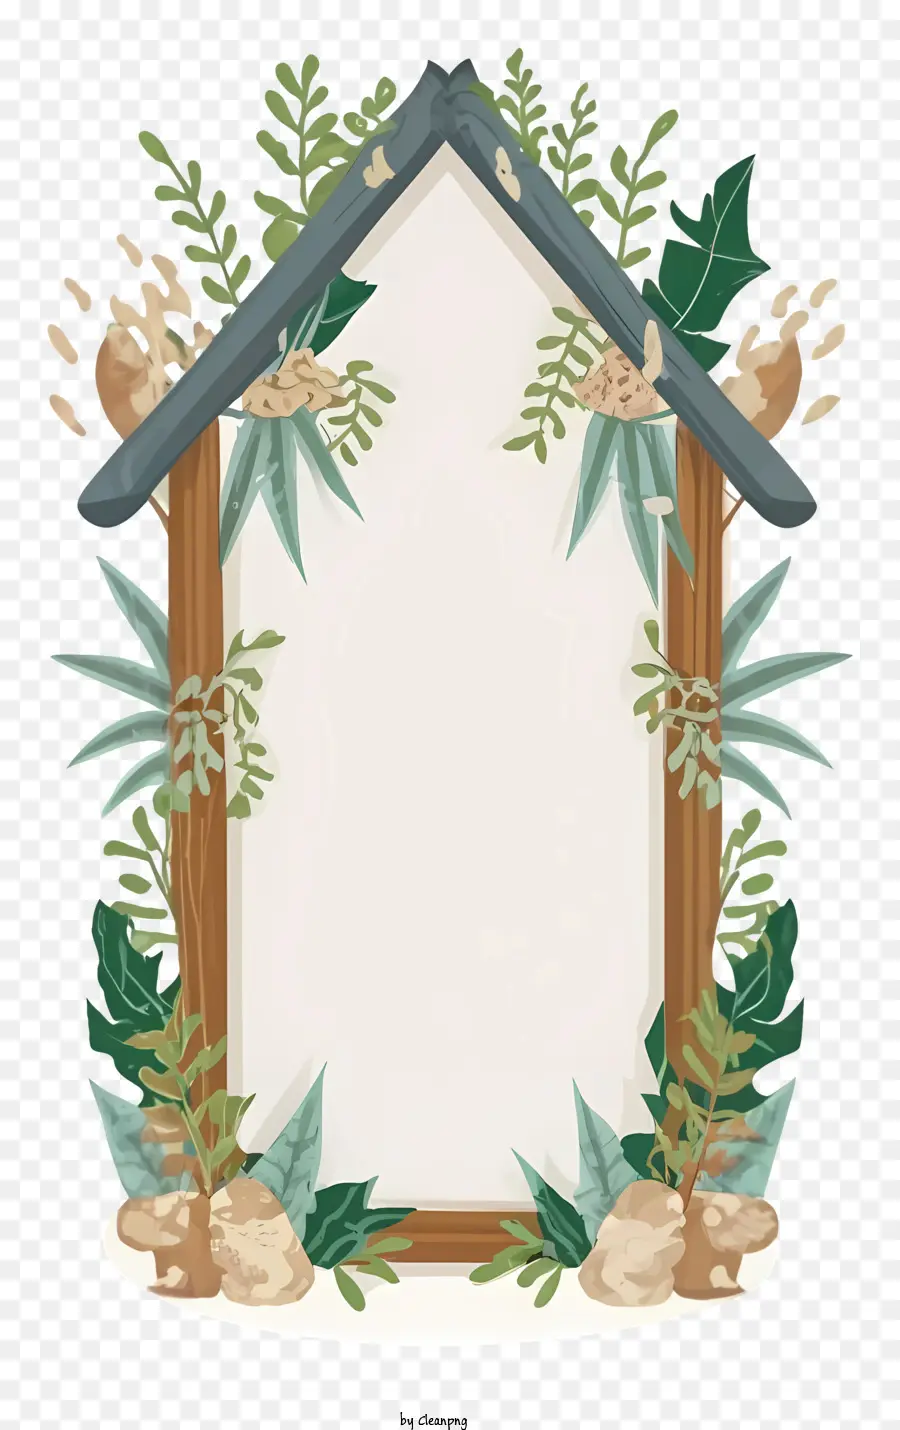 cartone animato illustrazione di fumetti piante in legno e tetto di paglia di viti - Casa in legno dei cartoni animati con piante e porta aperta